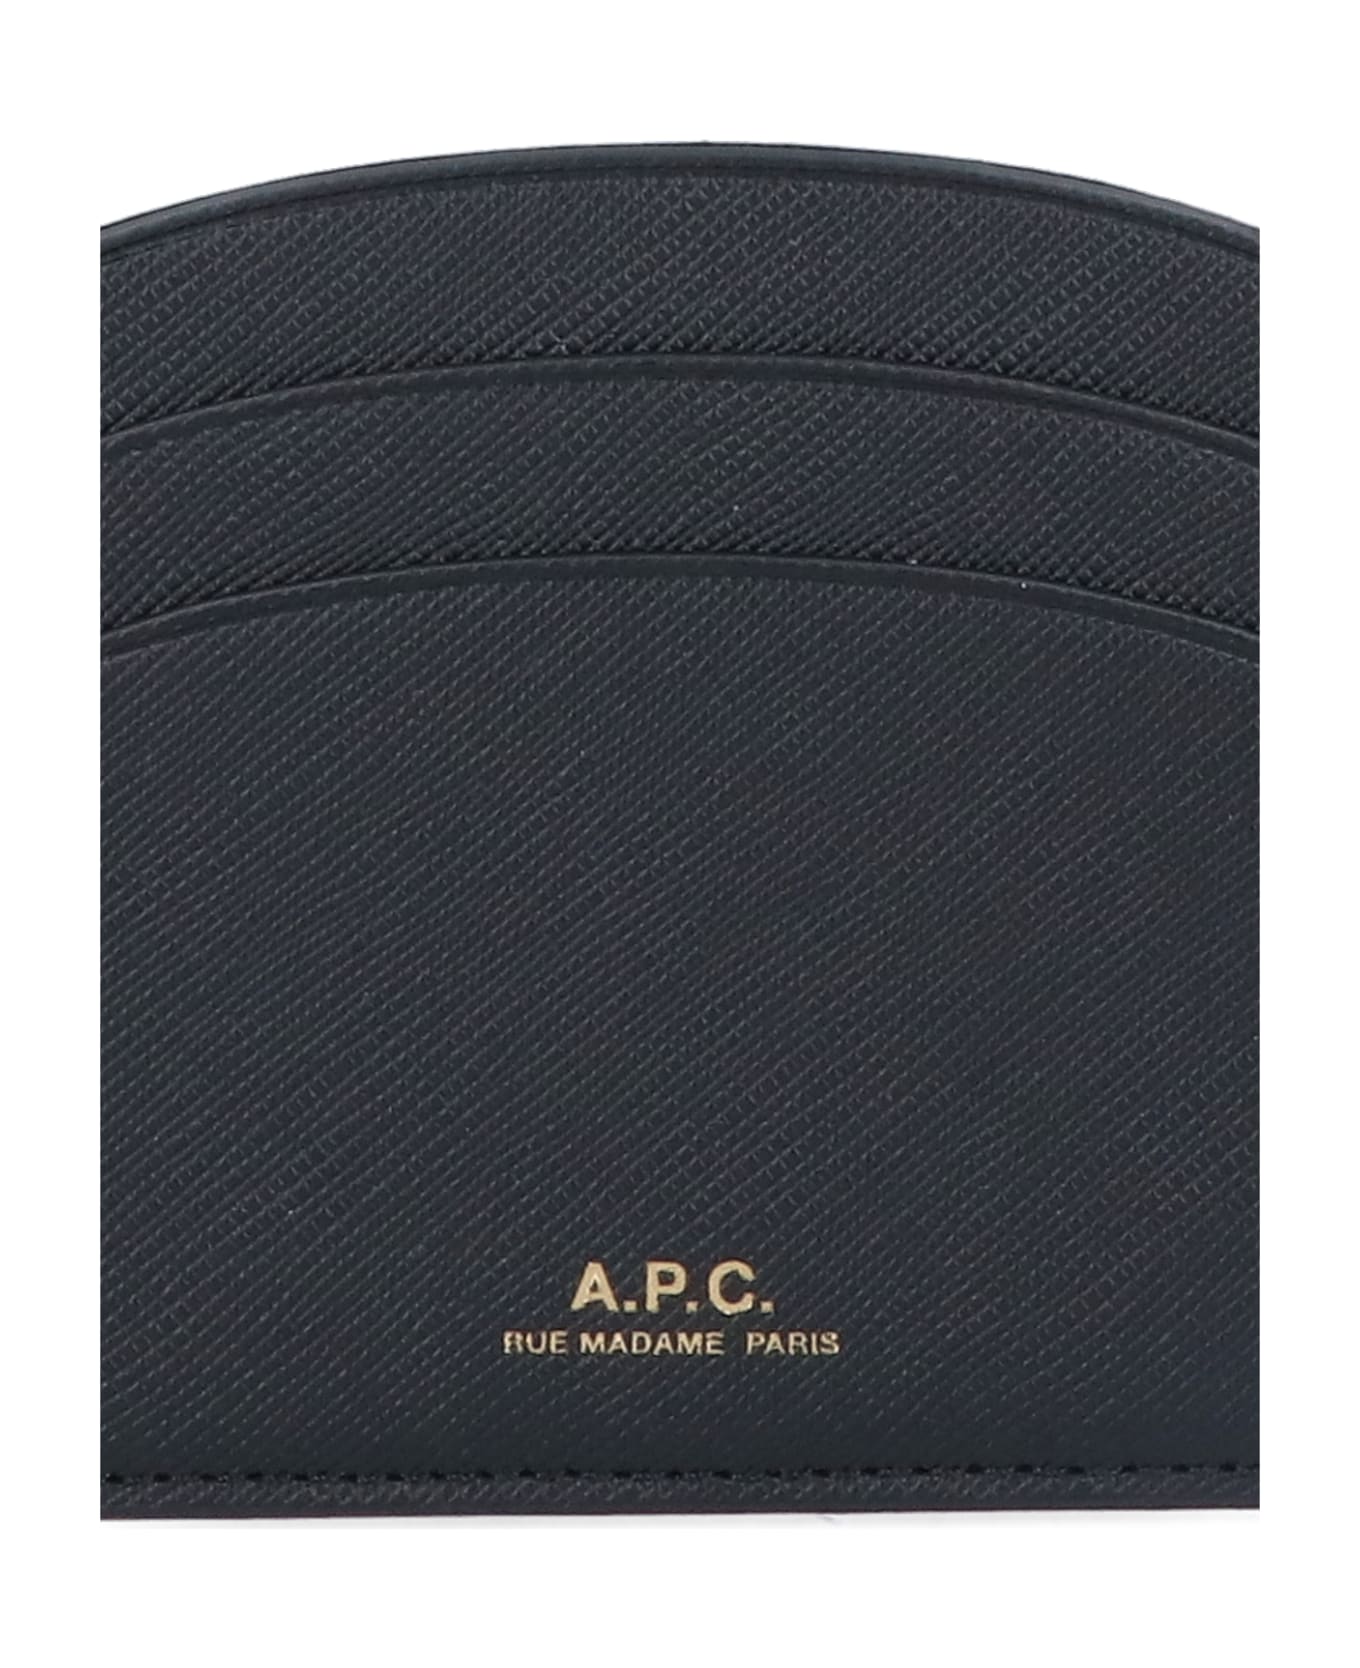 A.P.C. Demi-lune Card Holder - Black